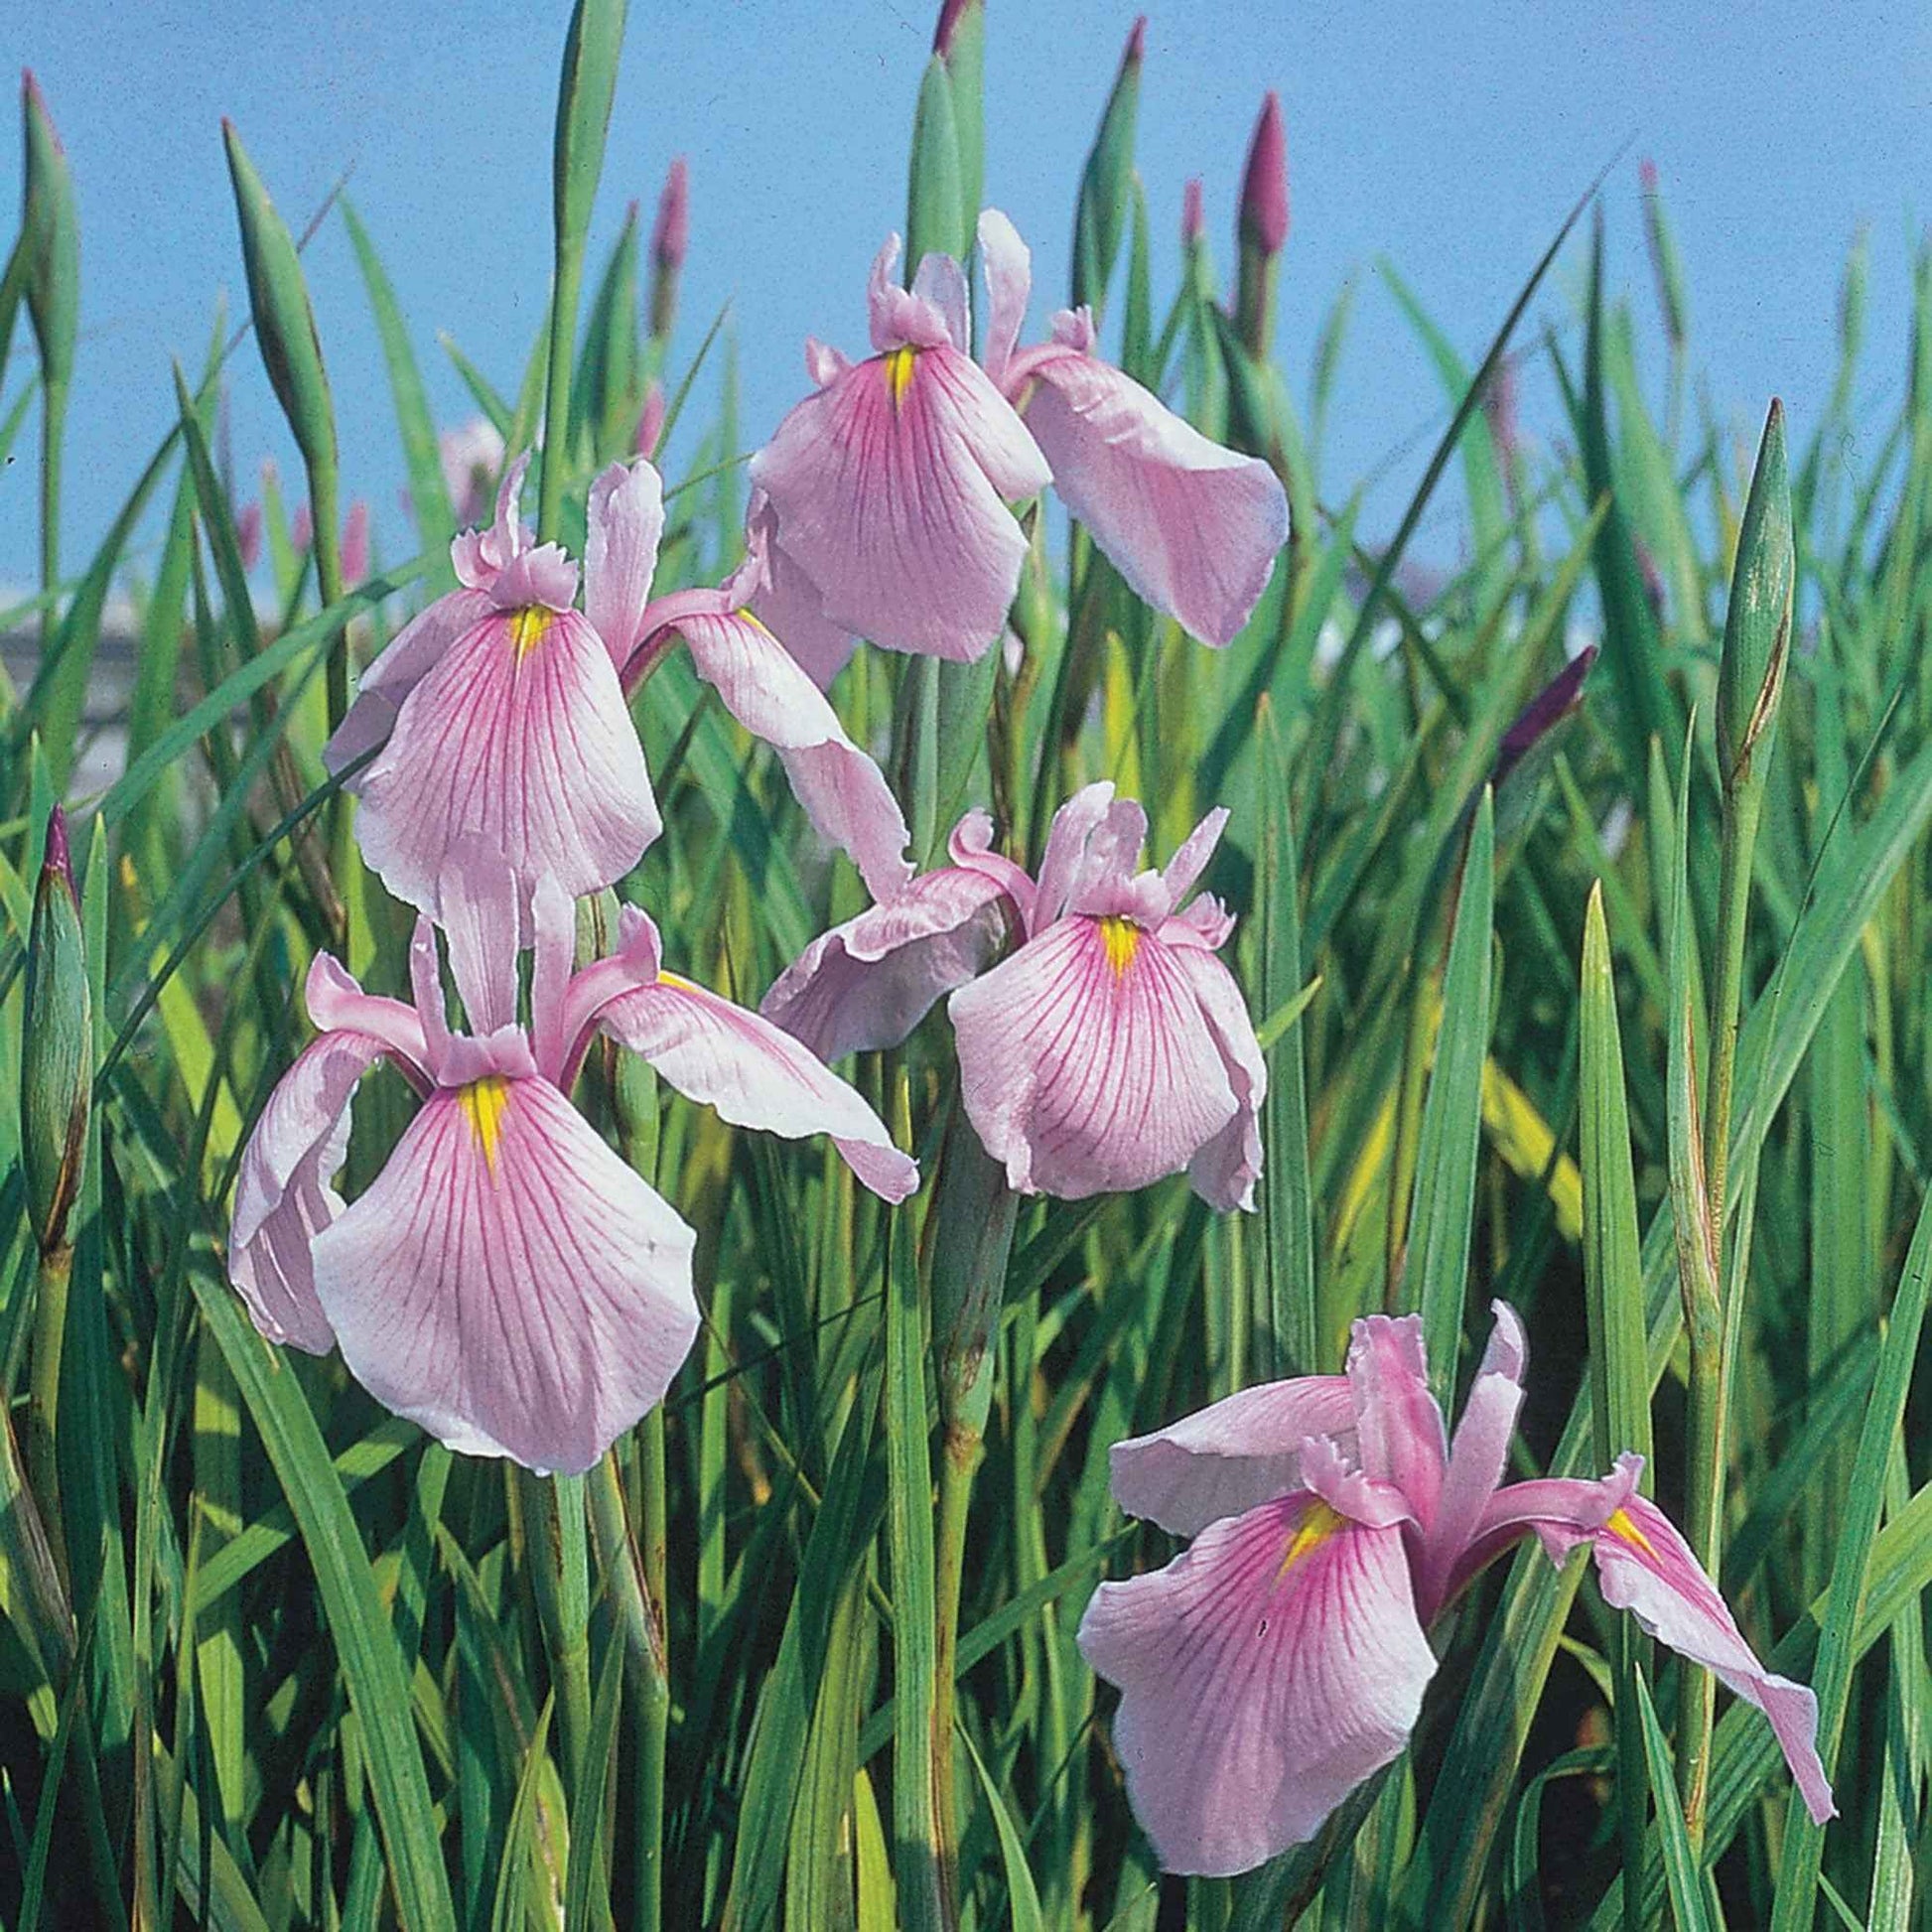 Japanische Iris Iris 'Rose Queen' rosa - Sumpfpflanze, Uferpflanze - Einheimischer Teich